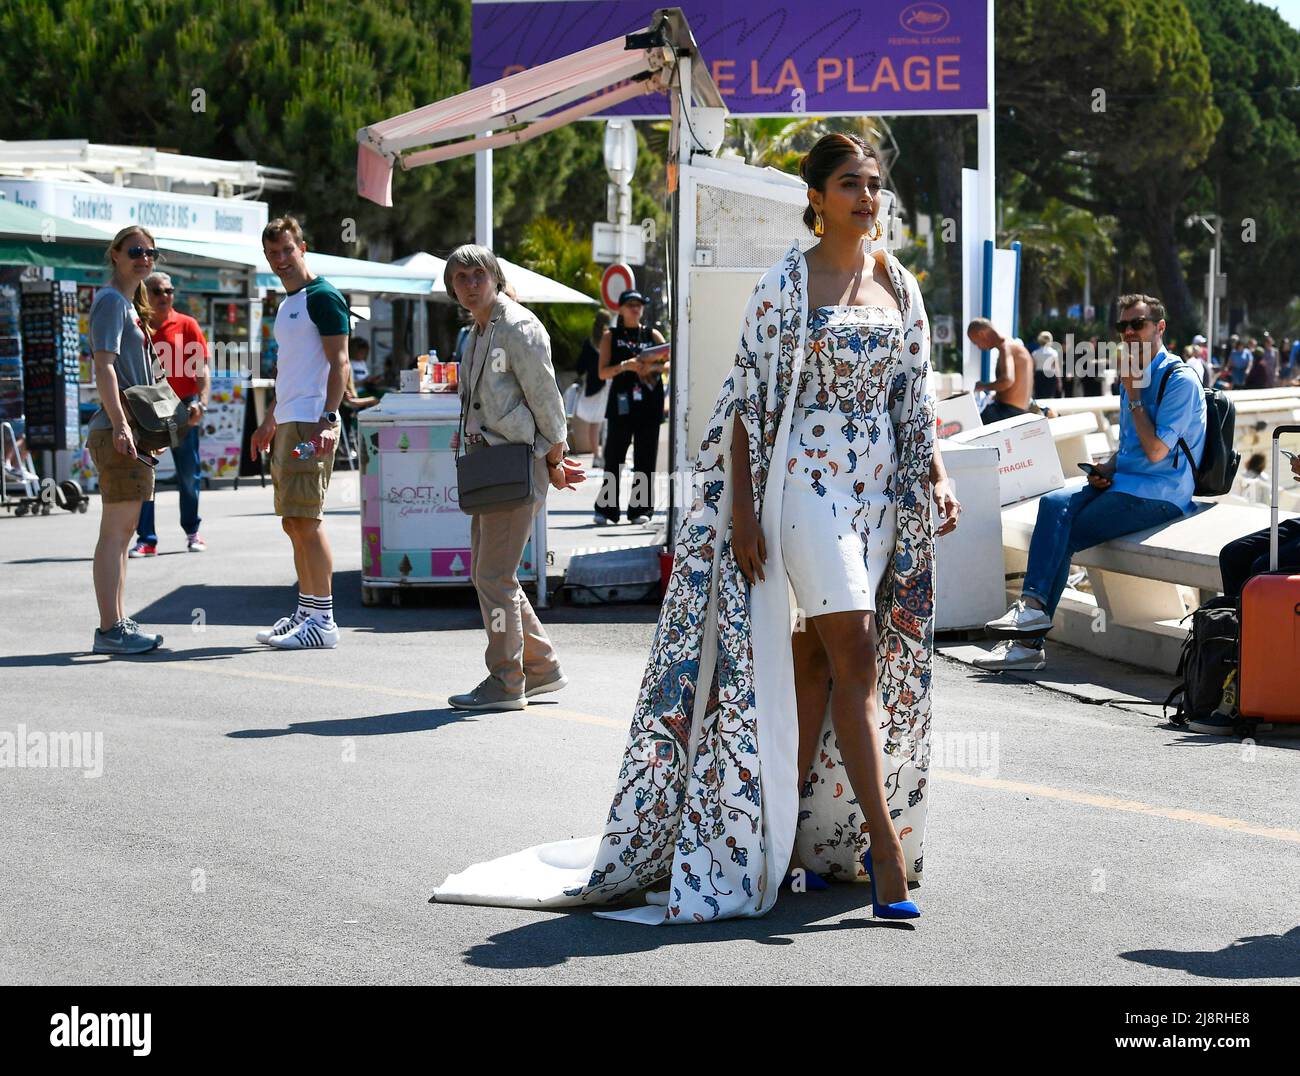 Festival del cinema di Cannes 75th - Cannes, Francia, 18 maggio 2022. L'attore Pooja Hegde è visto sulla Croisette come l'India è il Paese d'onore alle Marche du Film (mercato del cinema). REUTERS/Piroschka Van De Wouw Foto Stock